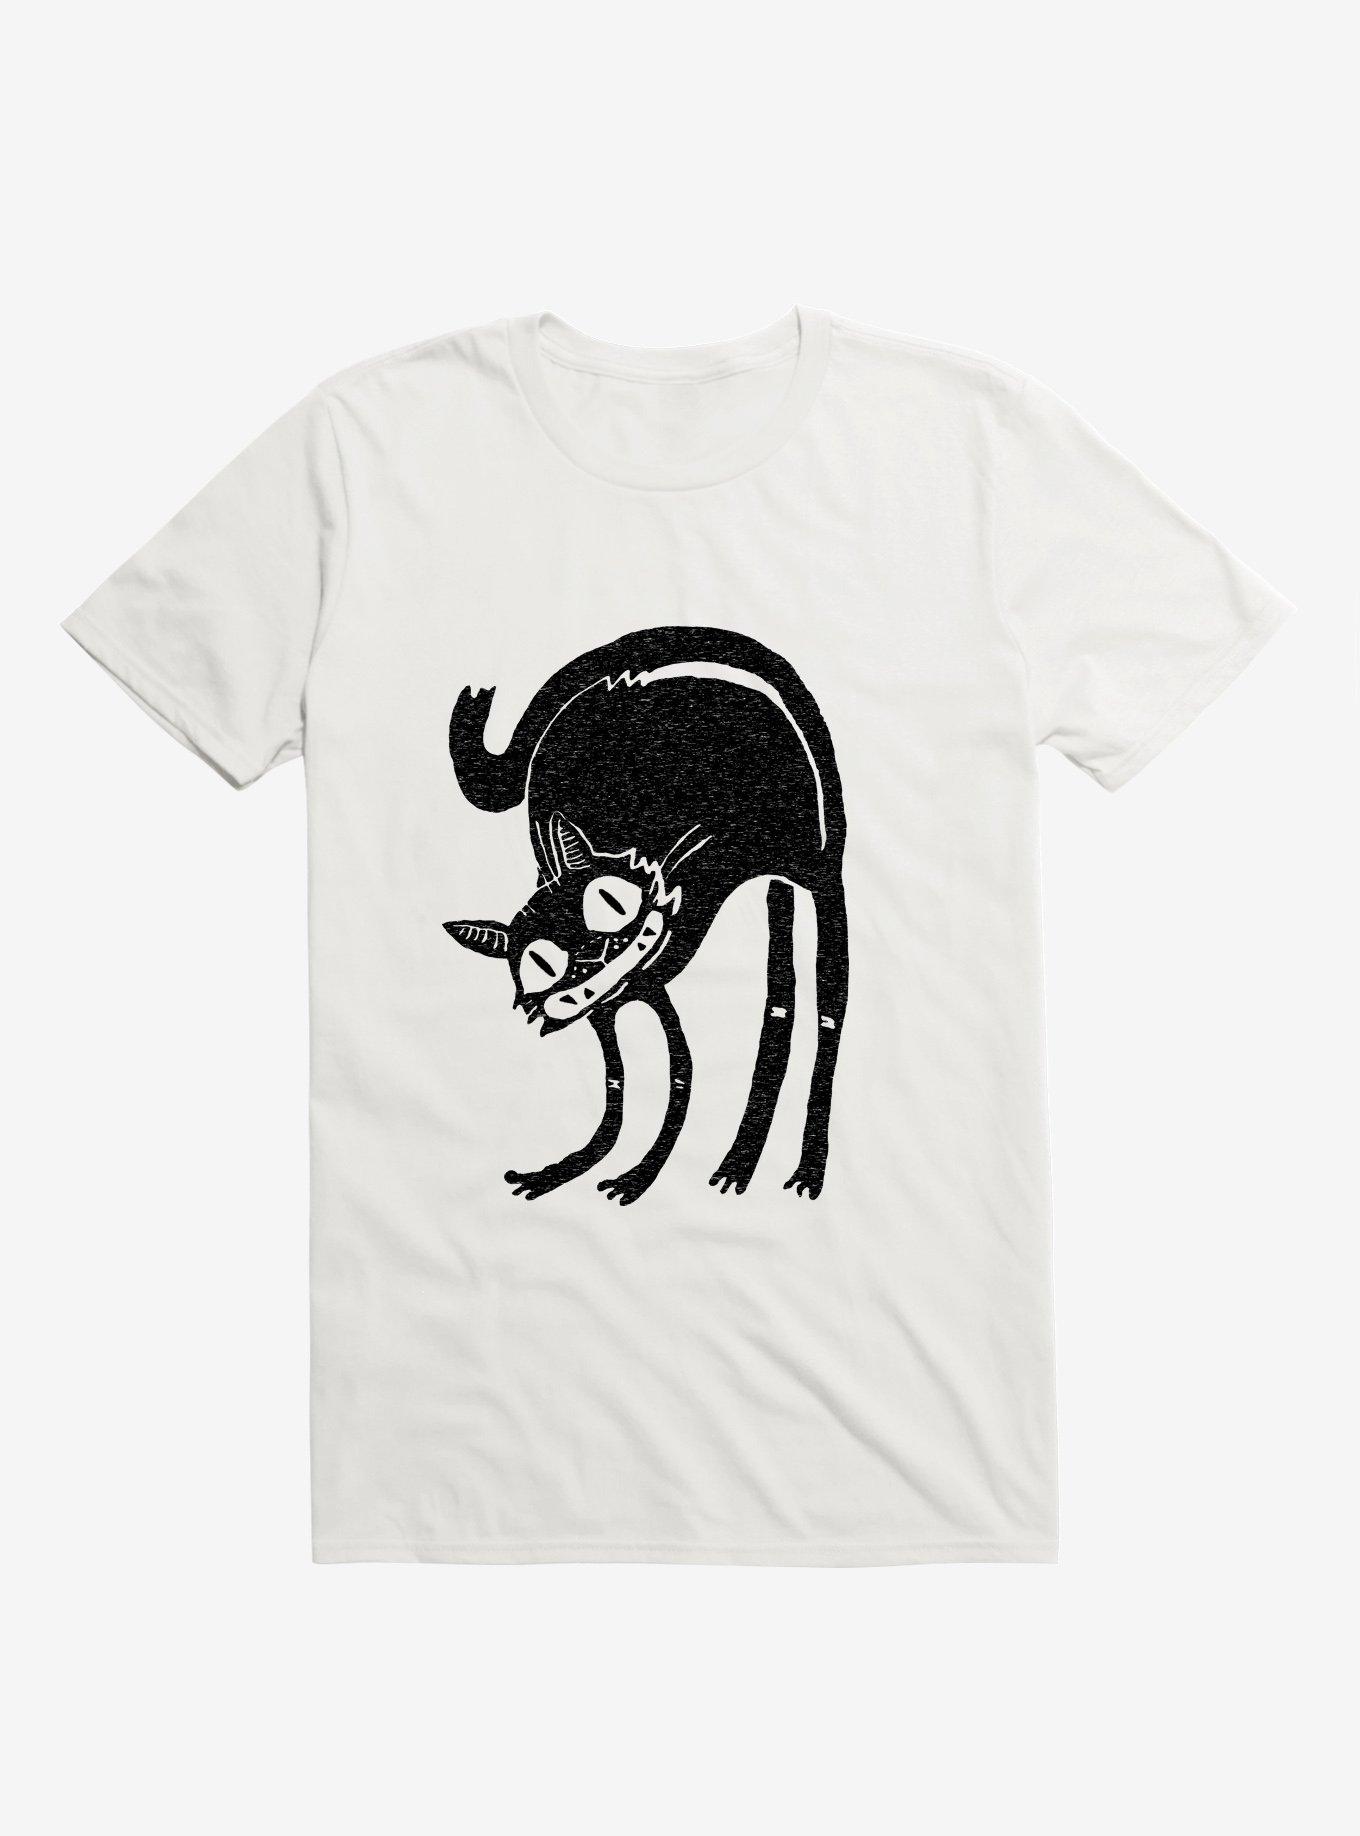 Frightened Black Cat White T-Shirt - WHITE | Hot Topic